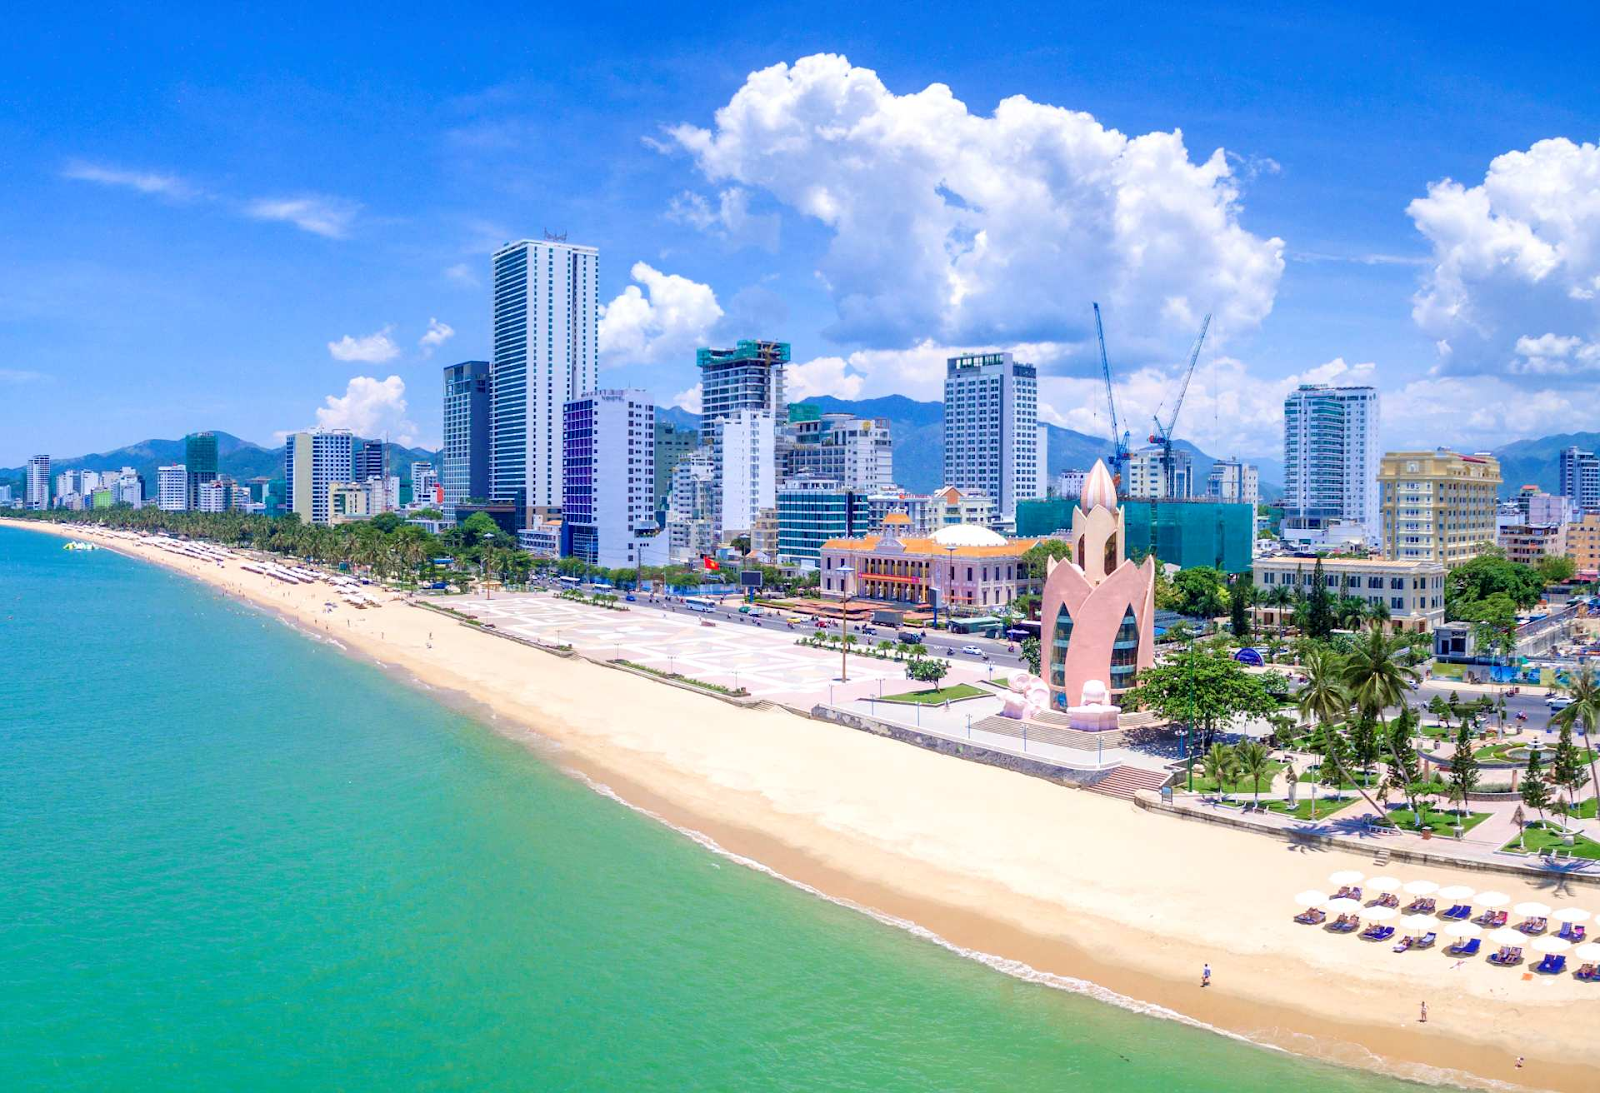 Thành phố biển Nha Trang với vẻ đẹp ngày càng hiện đại (Nguồn: Internet)